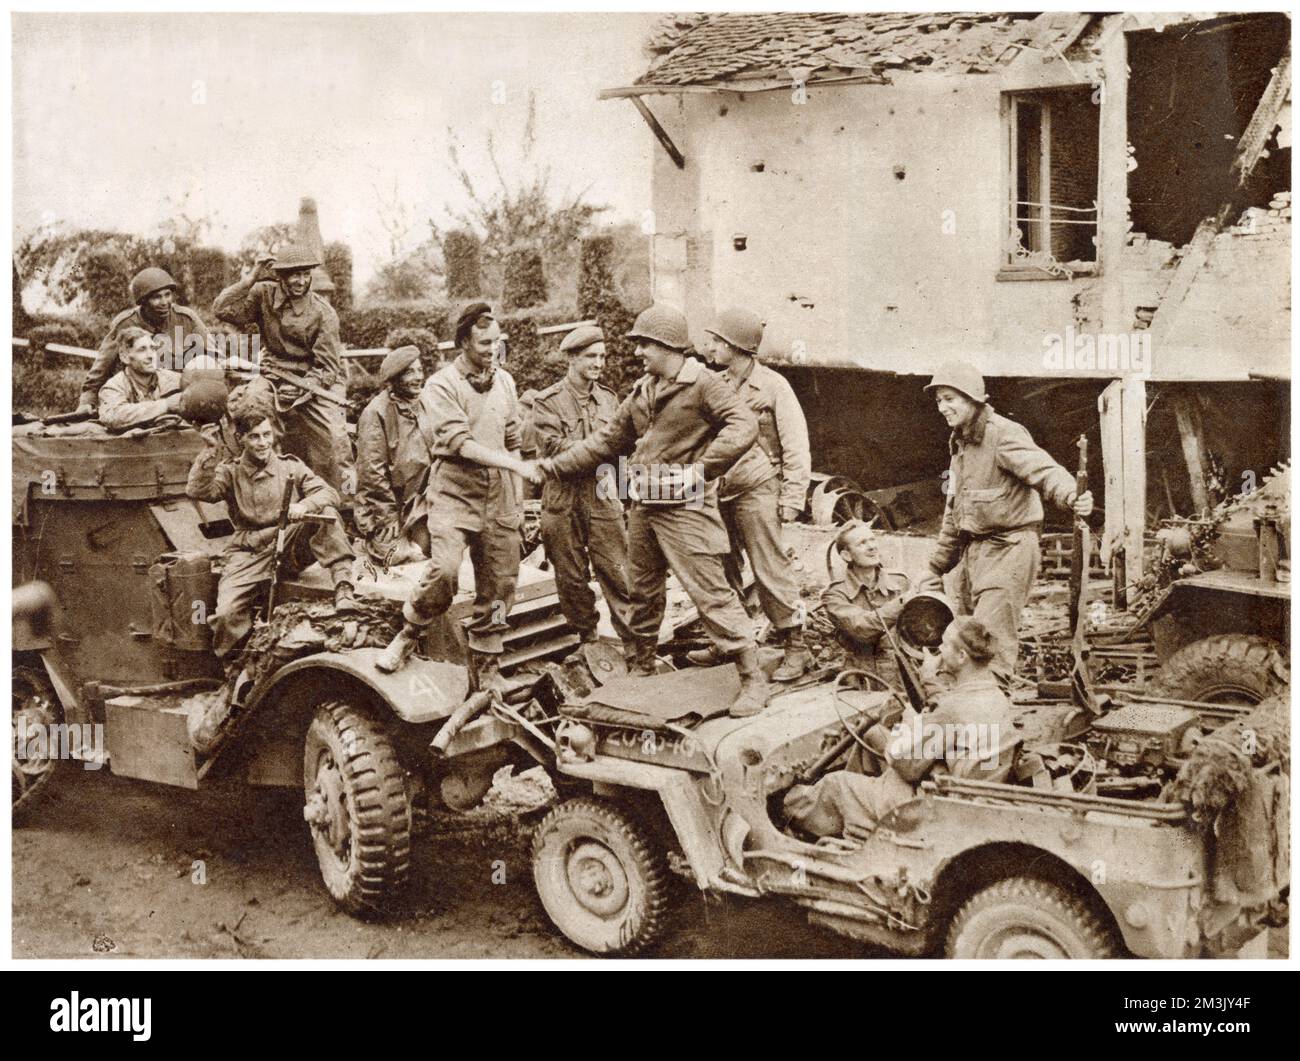 Das Treffen zwischen amerikanischen Truppen (rechts mit Jeep) und kanadischen Truppen (links mit Halbschiene), um die „Falaise Pocket“ auf der Straße zwischen Falaise und Argentan, Frankreich, 1944 zu schließen. Durch die Schließung der Lücke in Falaise hatten die alliierten Truppen ihren Versuch beendet, die deutsche Fünfte Armee und die Siebte Panzerarmee einzukreisen. Stockfoto